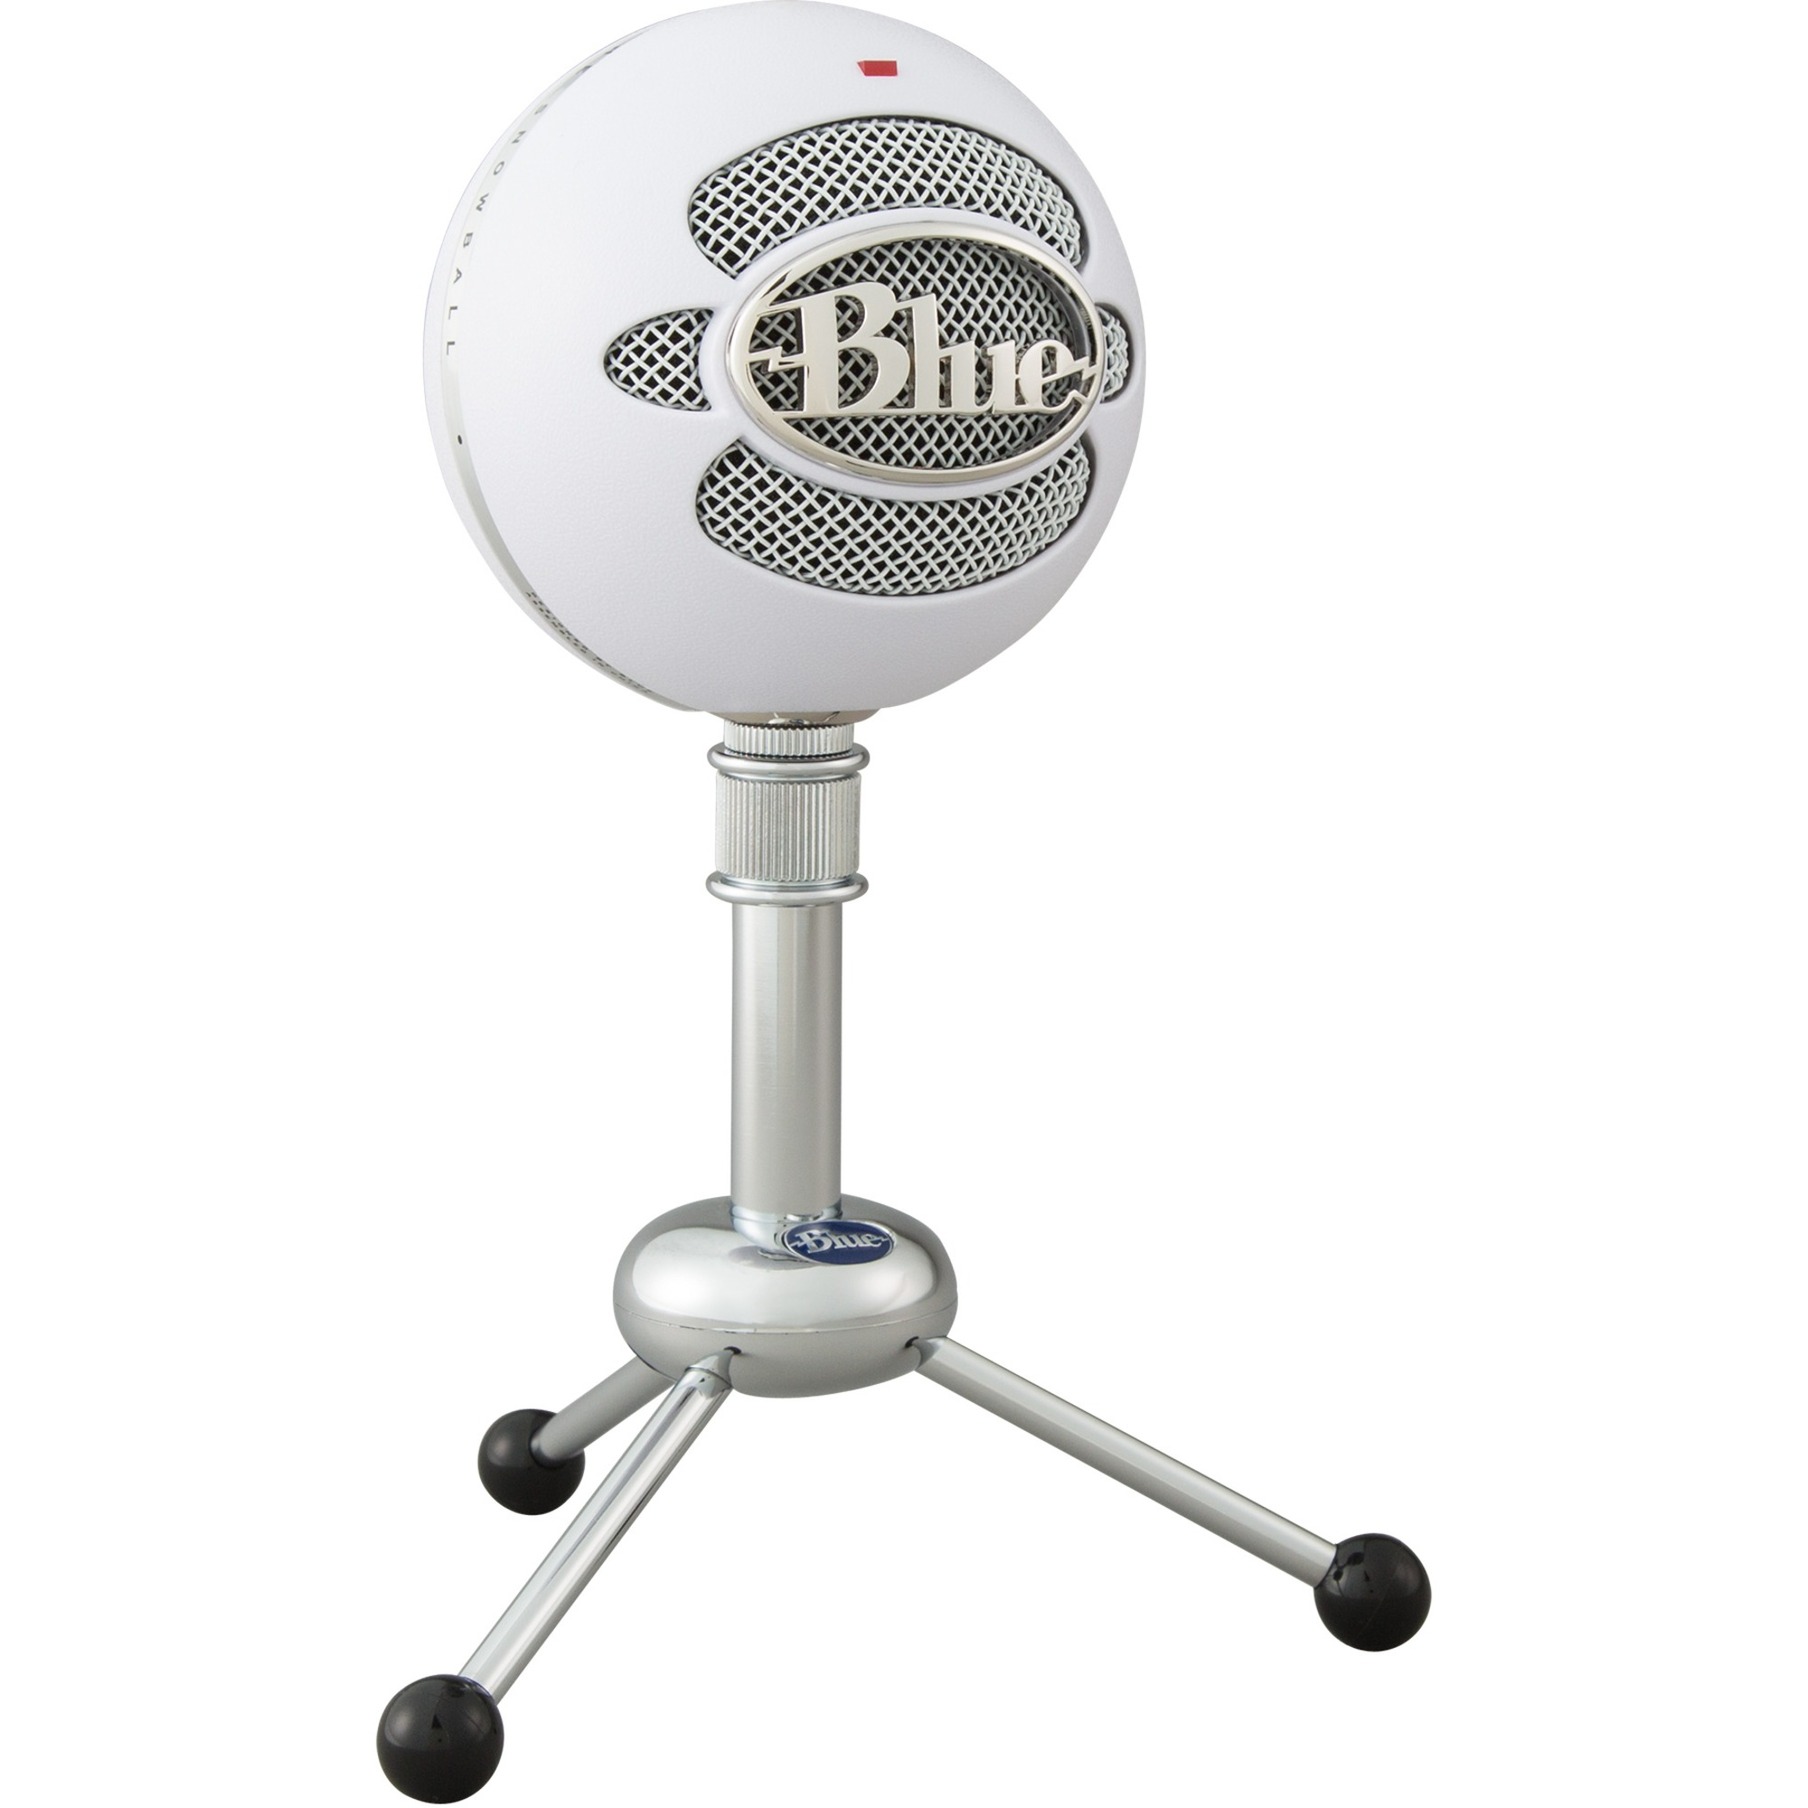 Image of Alternate - Snowball, Mikrofon online einkaufen bei Alternate